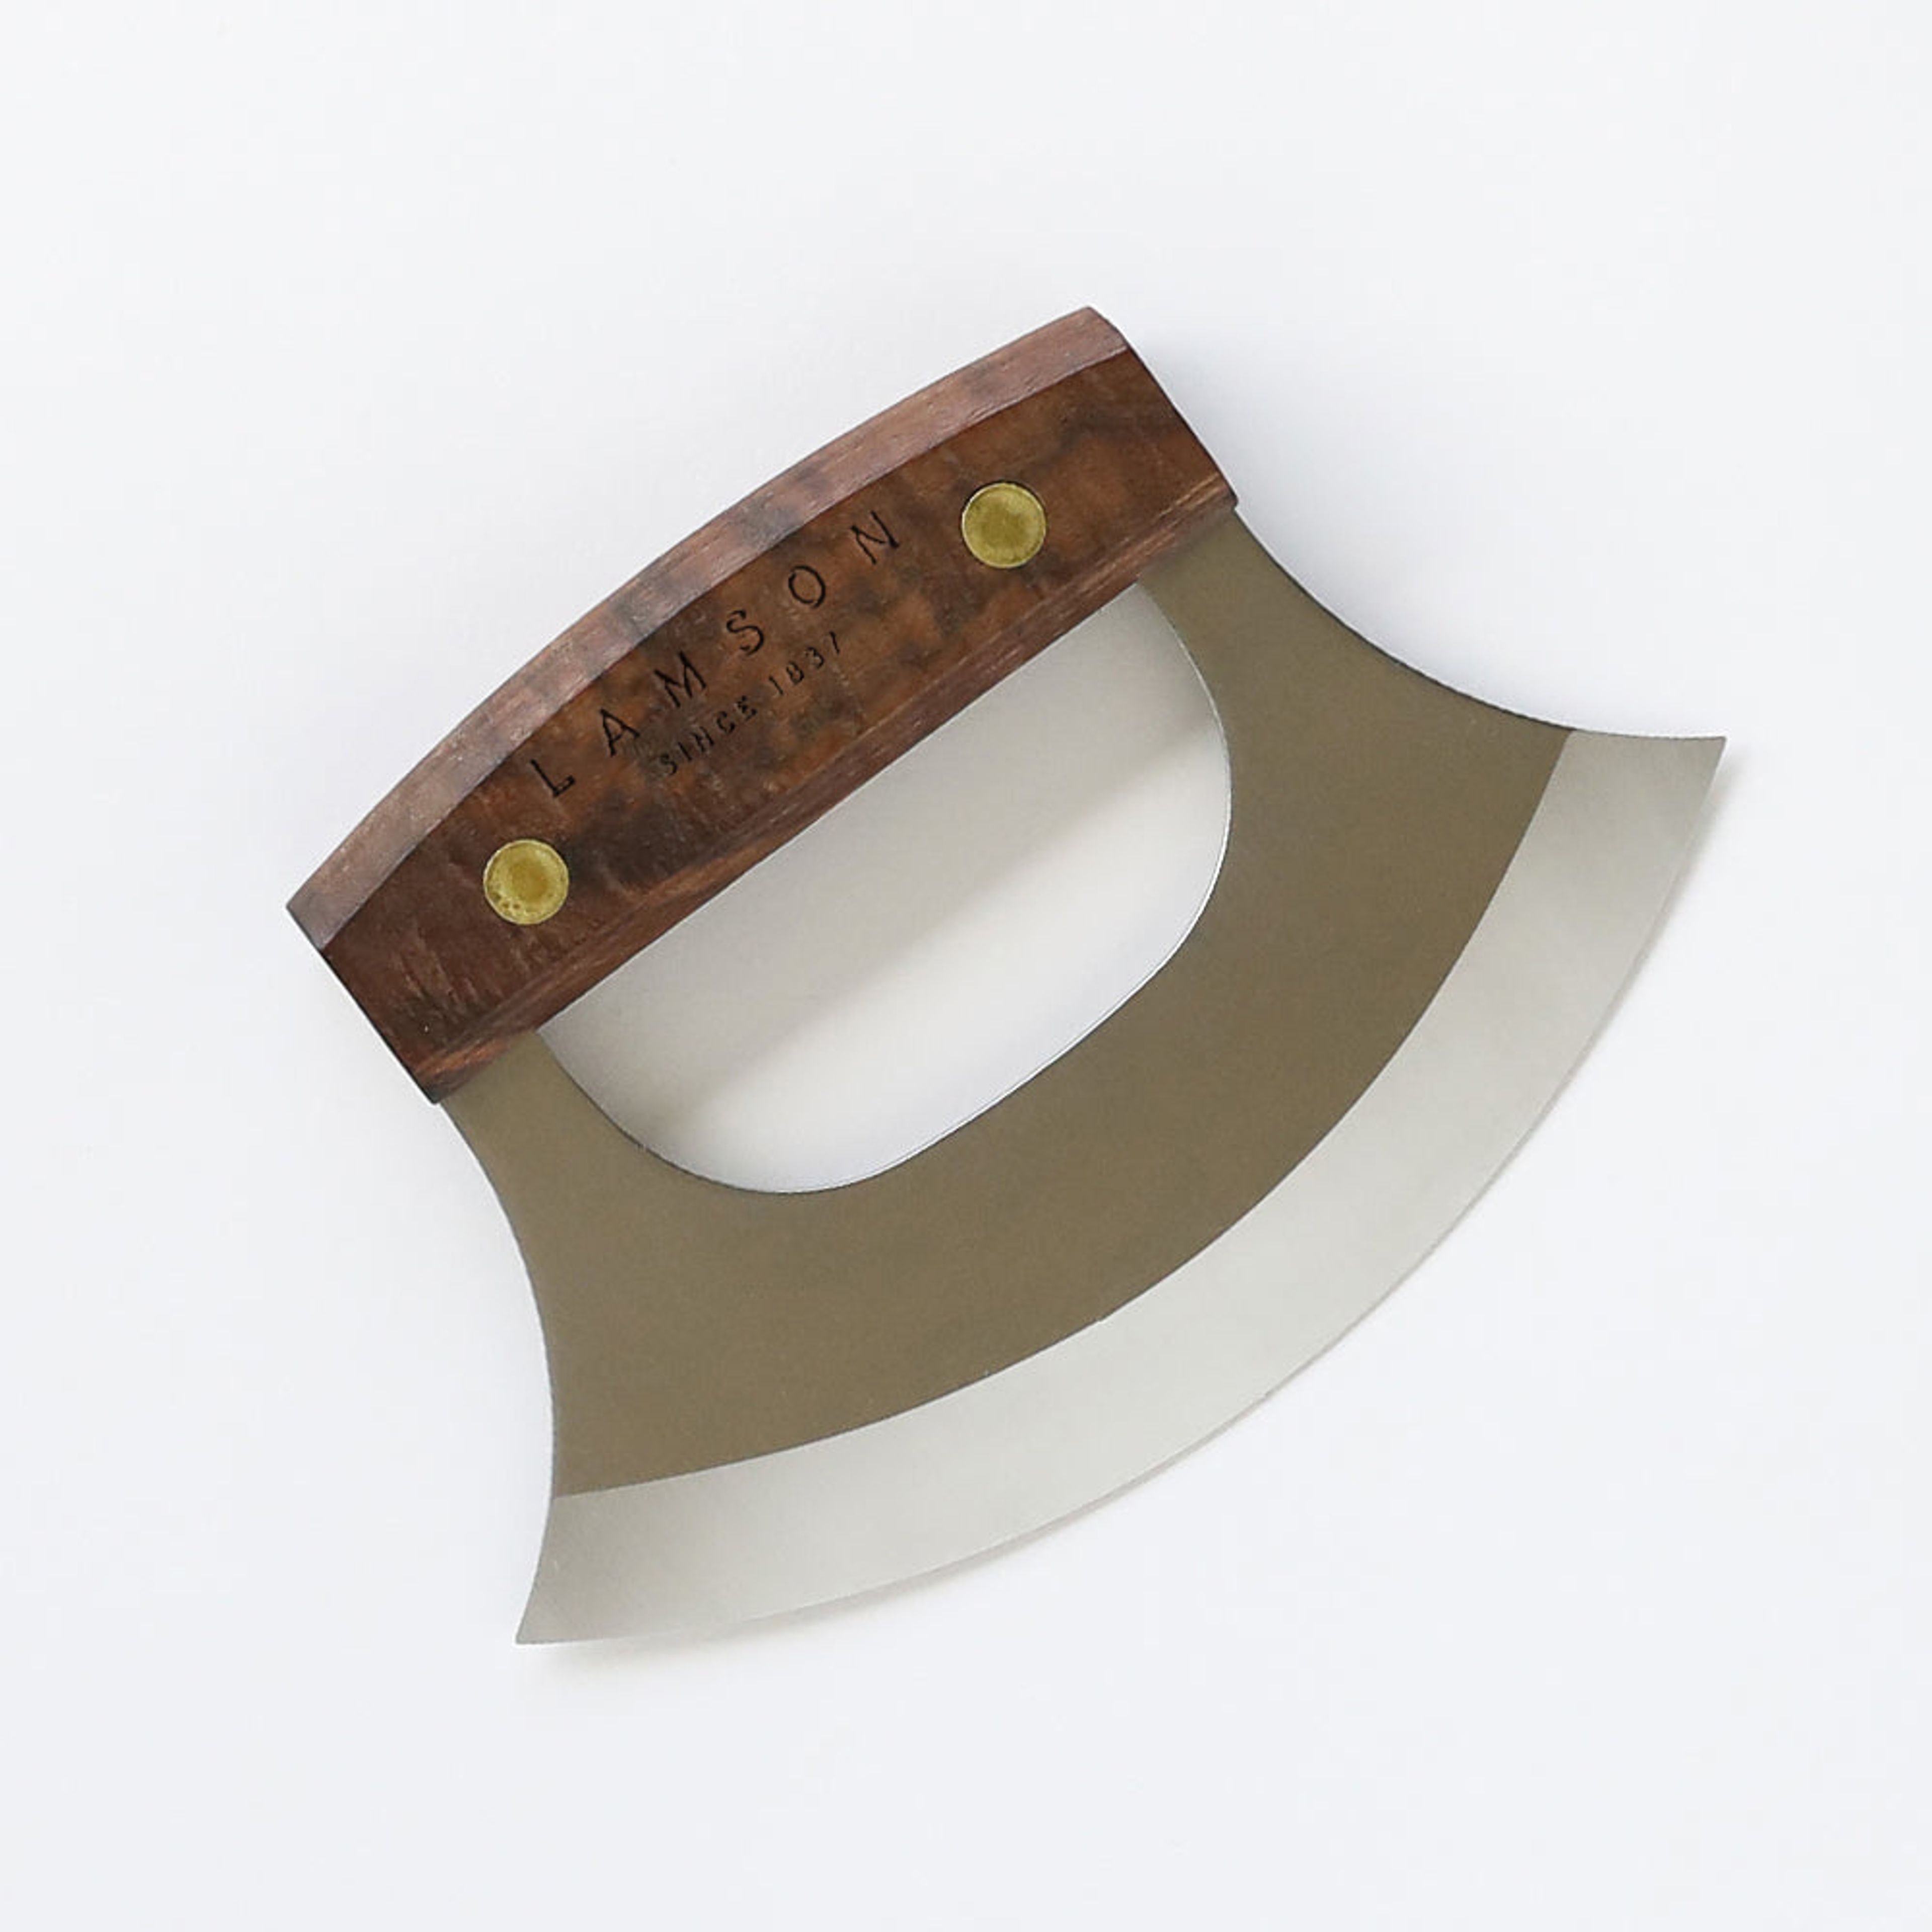 The Alaskan Ulu Knife - Regular Size (6") or Large Size (7")